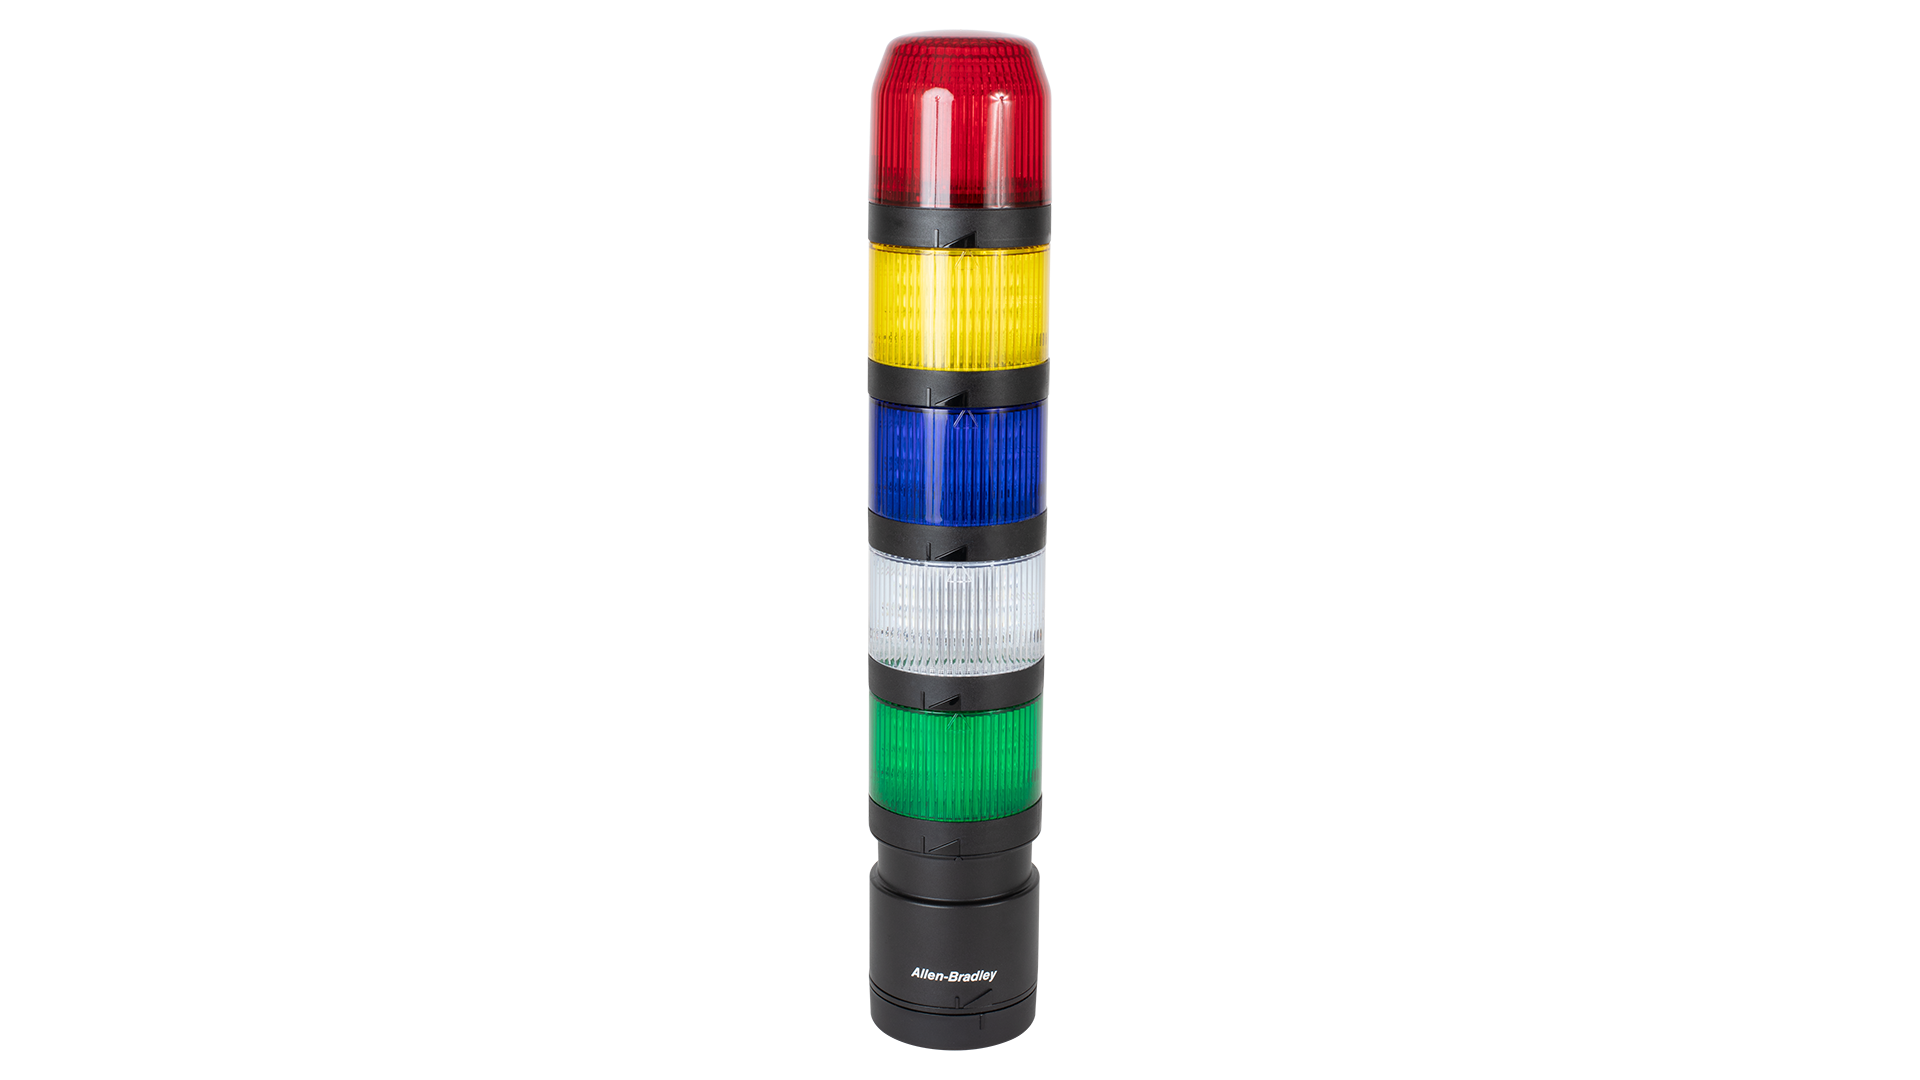 IO-Link 塔灯 - 从上到下 - 黑色传感器发声器模块，红色、琥珀色和绿色不亮指示灯模块，黑色垂直安装基座